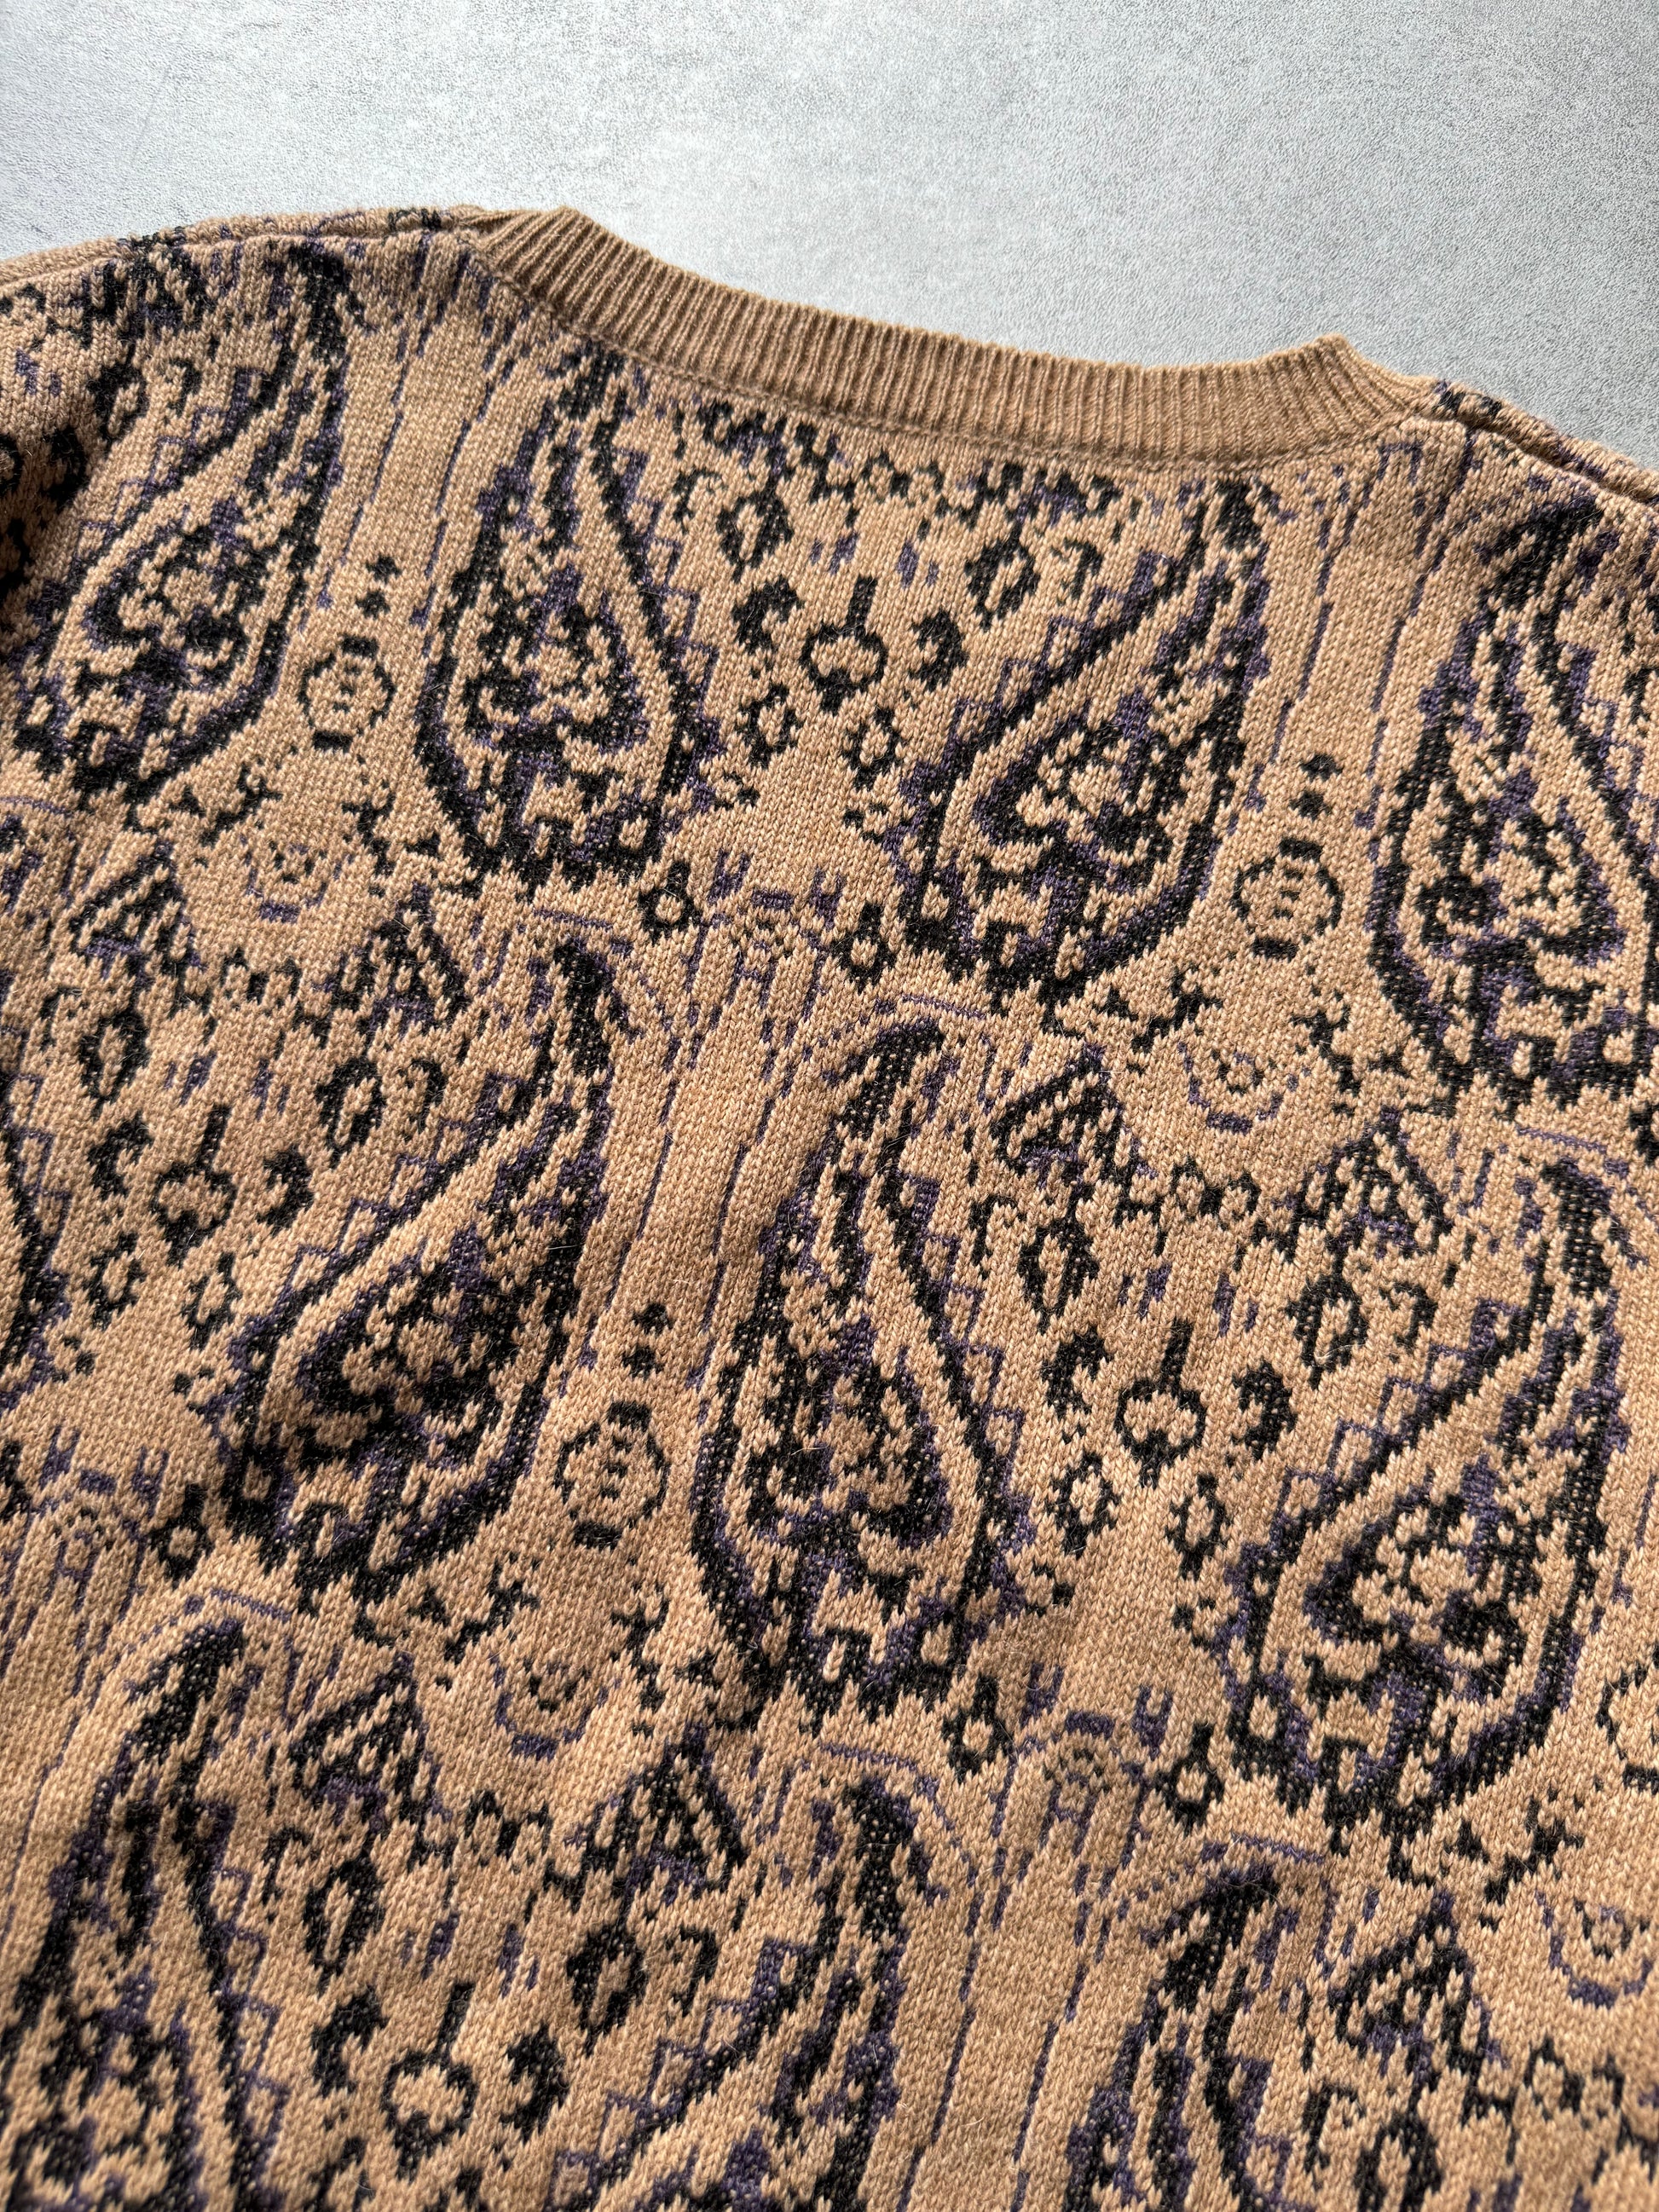 AW2018 Dries Van Noten Precise Camel Sweater (L) - 7